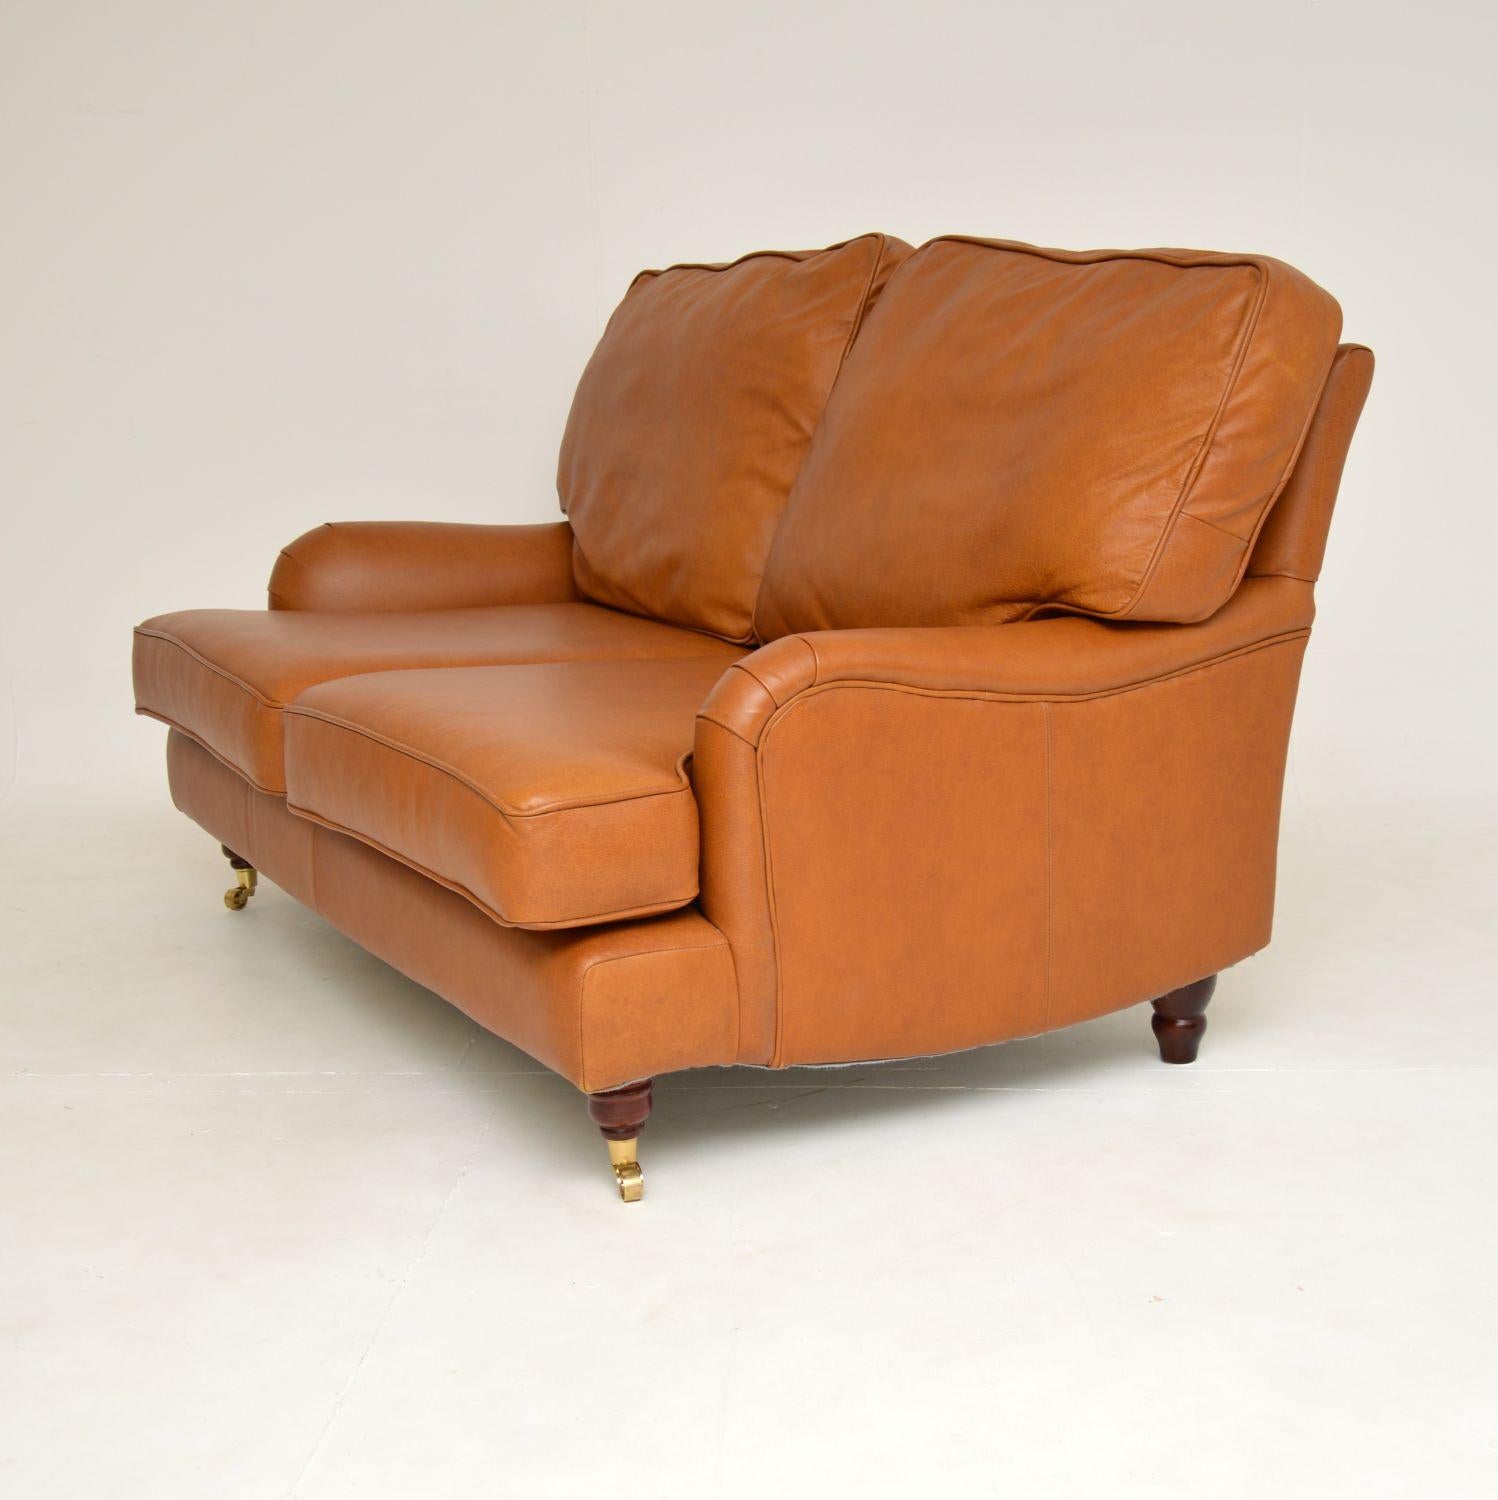 English Antique Howard Style Leather Sofa